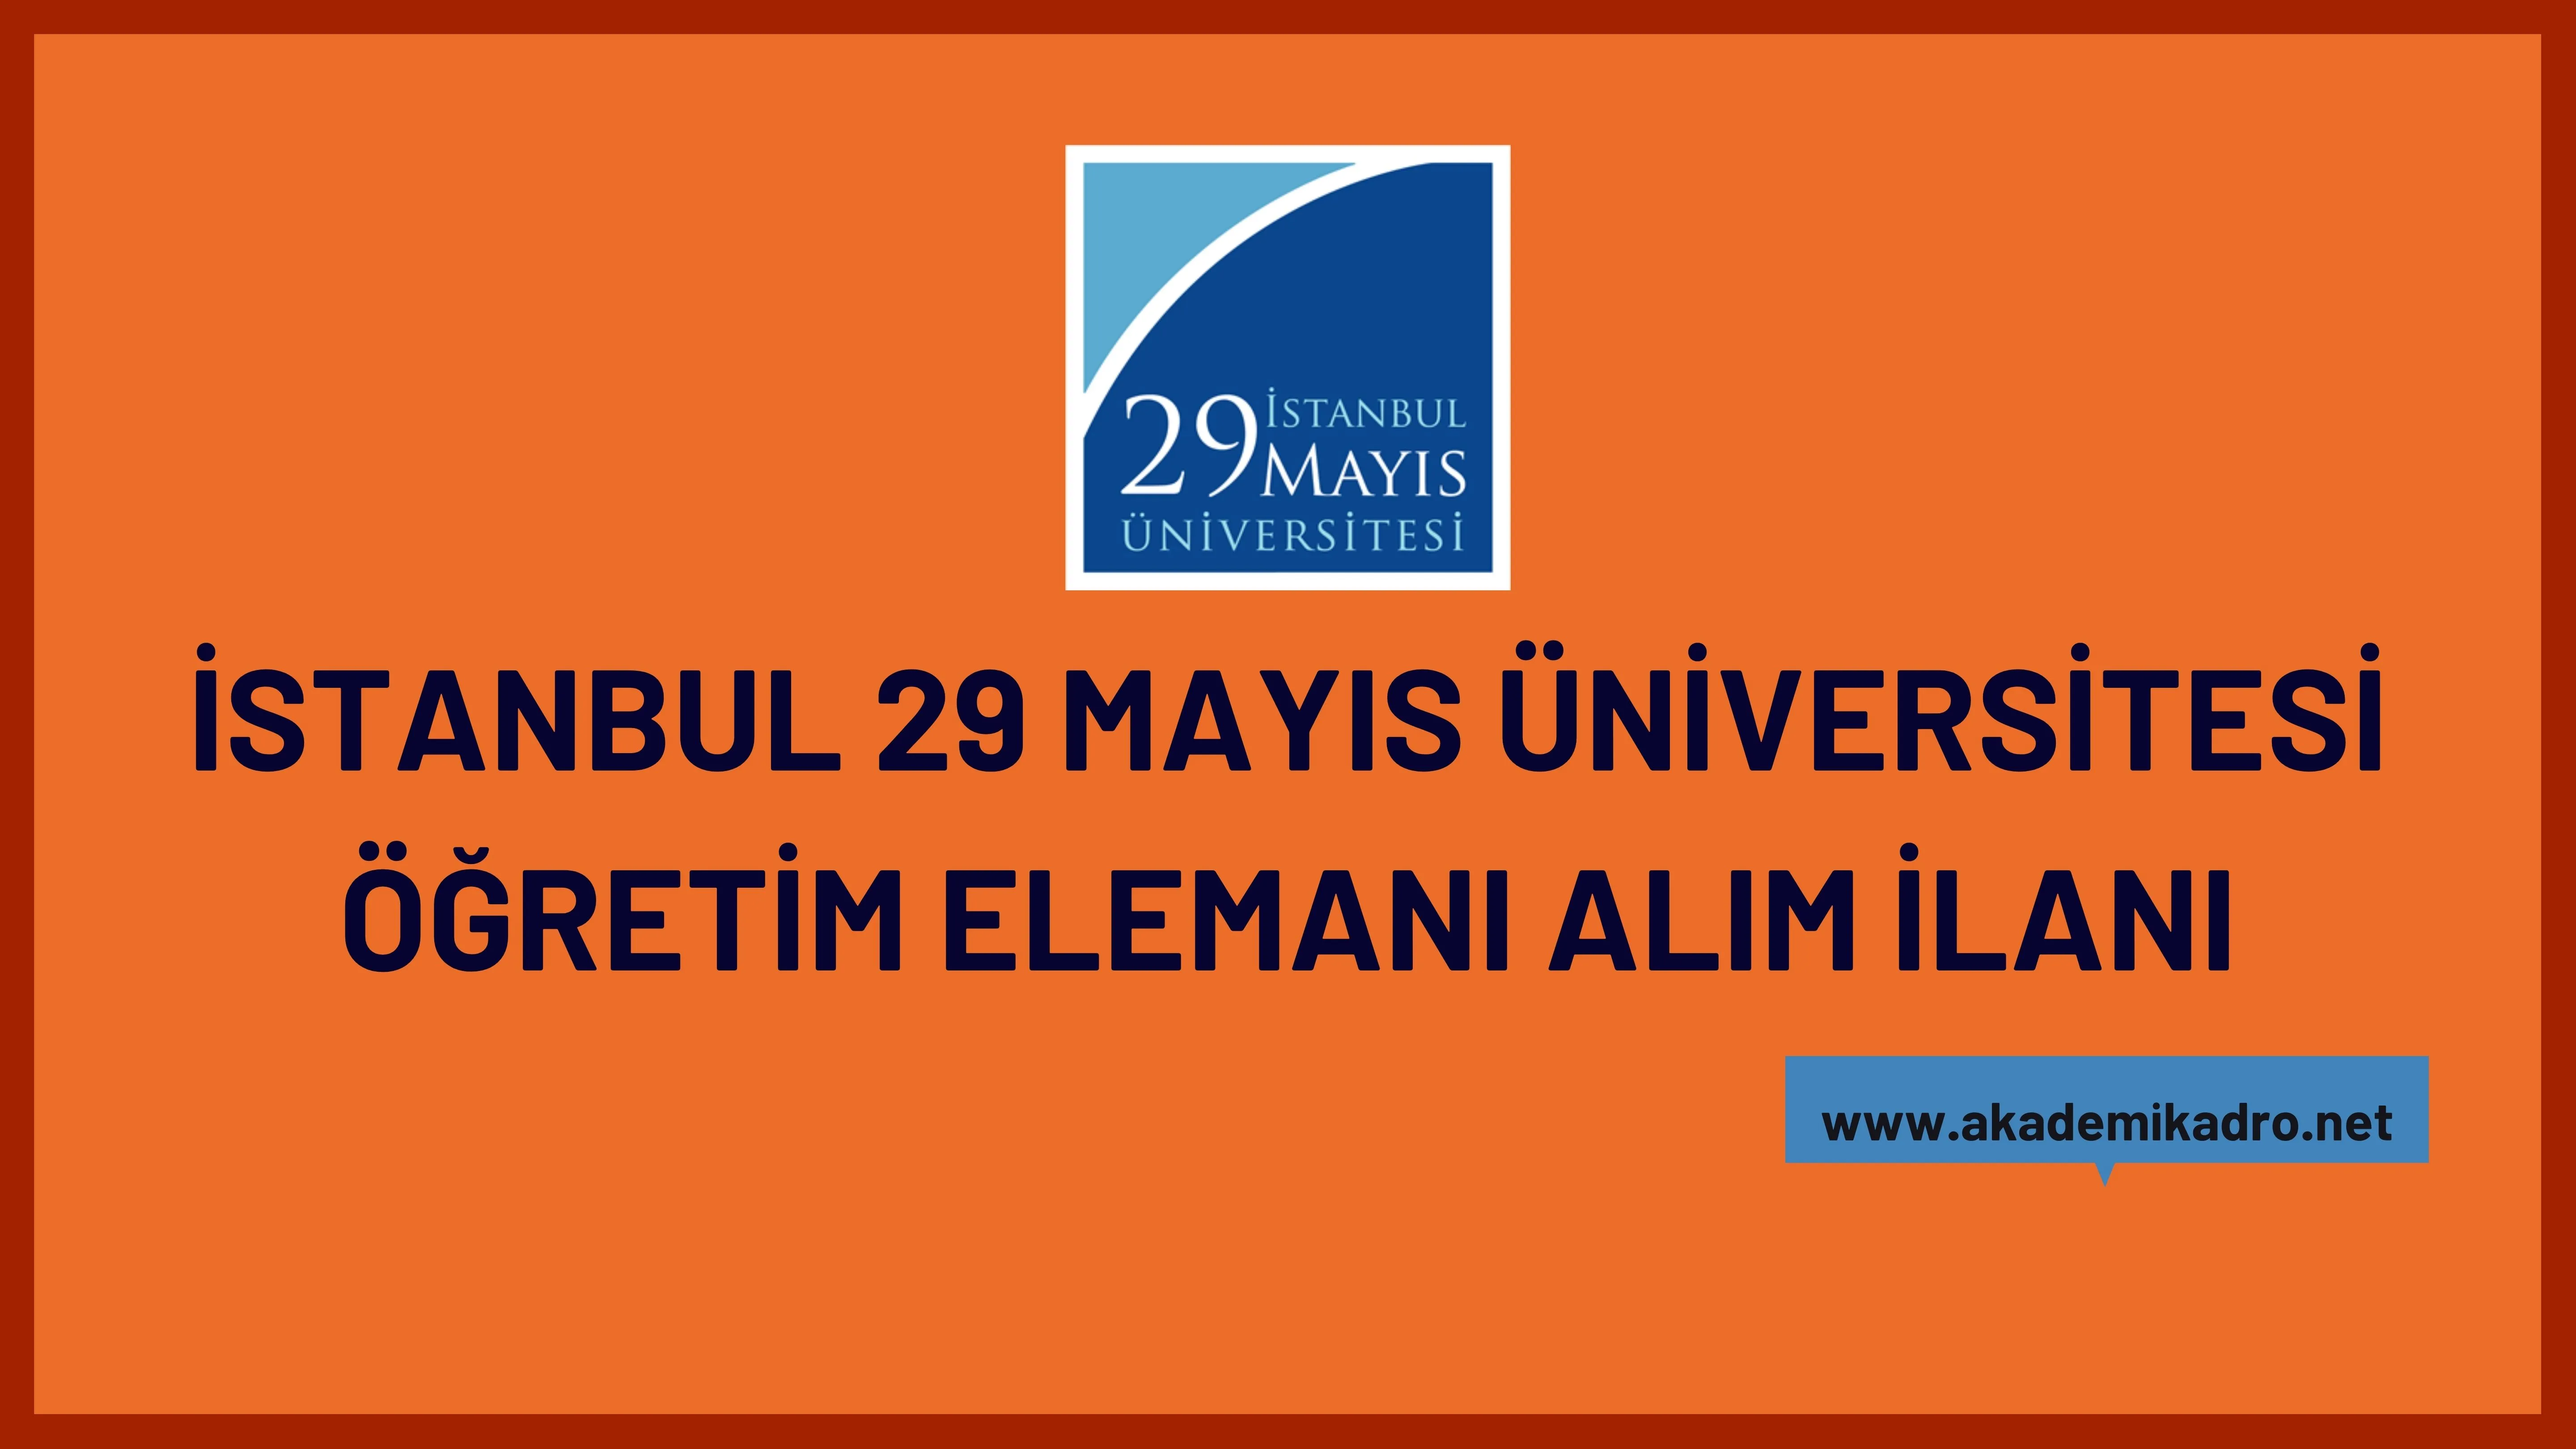 İstanbul 29 Mayıs Üniversitesi Araştırma görevlisi ve öğretim üyesi olmak üzere 10 öğretim elemanı alacak.